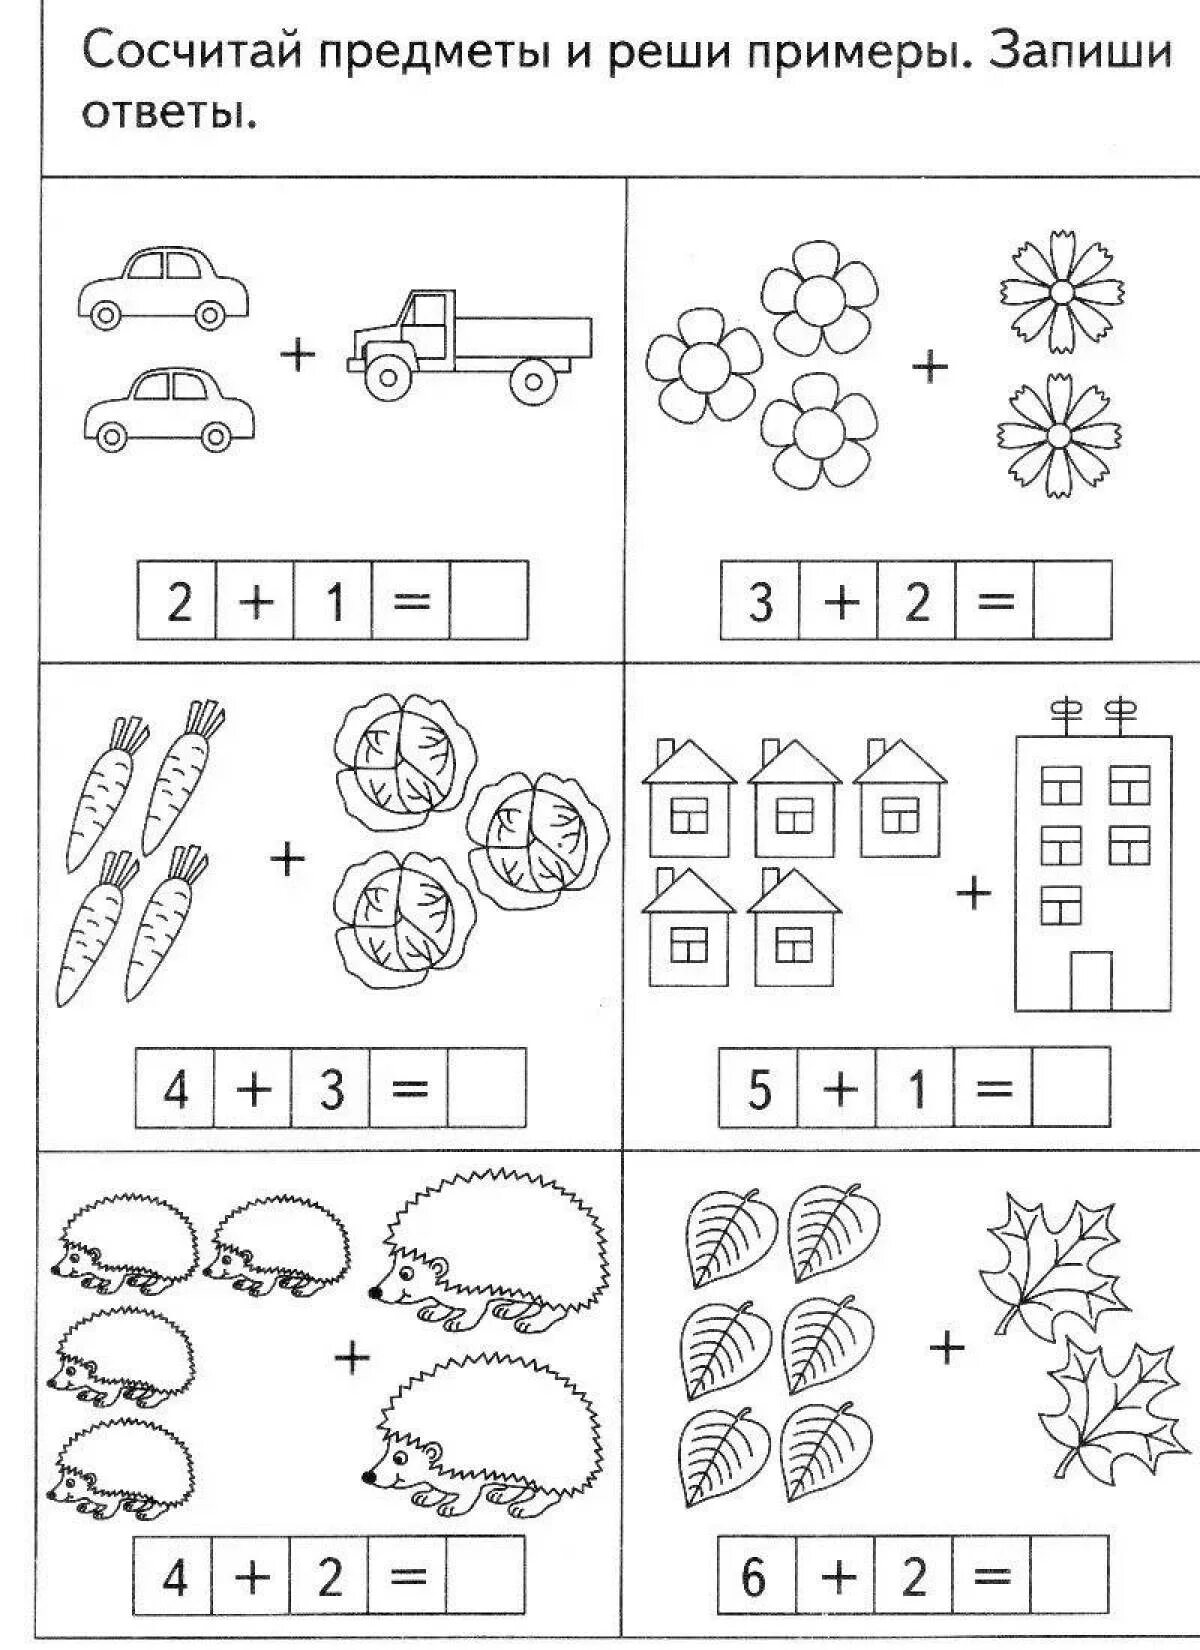 Примеры для 5 лет по математике. Задачи для дошкольников для дошкольников задания. Задания по математике решение примеров для дошкольников. Задачи по математике для дошкольников подготовительной группы. Простые математические задания для дошкольников.